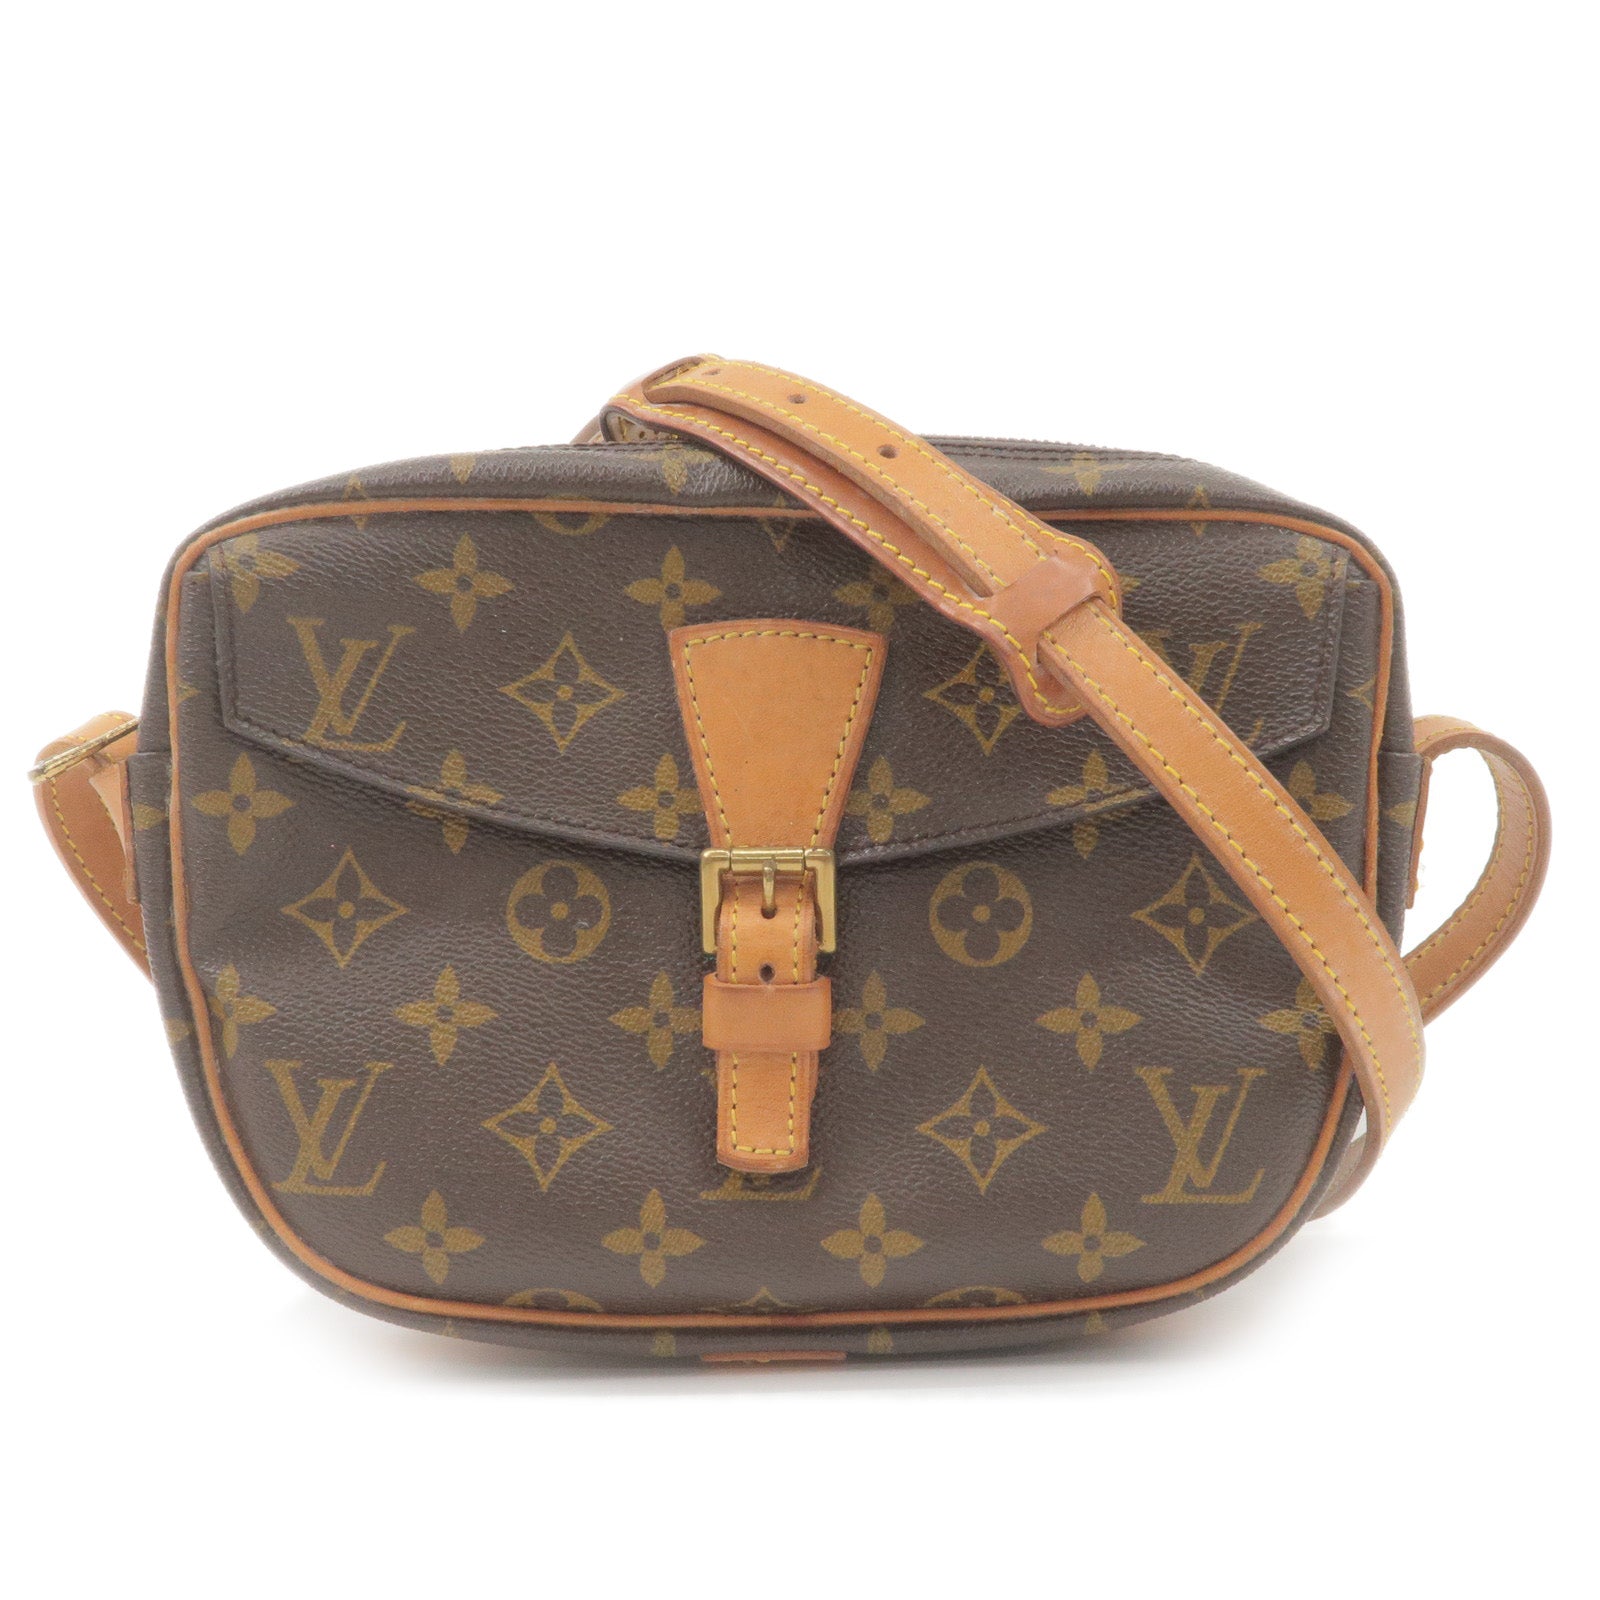 Louis Vuitton Jeune Fille Pm Cross Body Bag Purse Monogram M51227